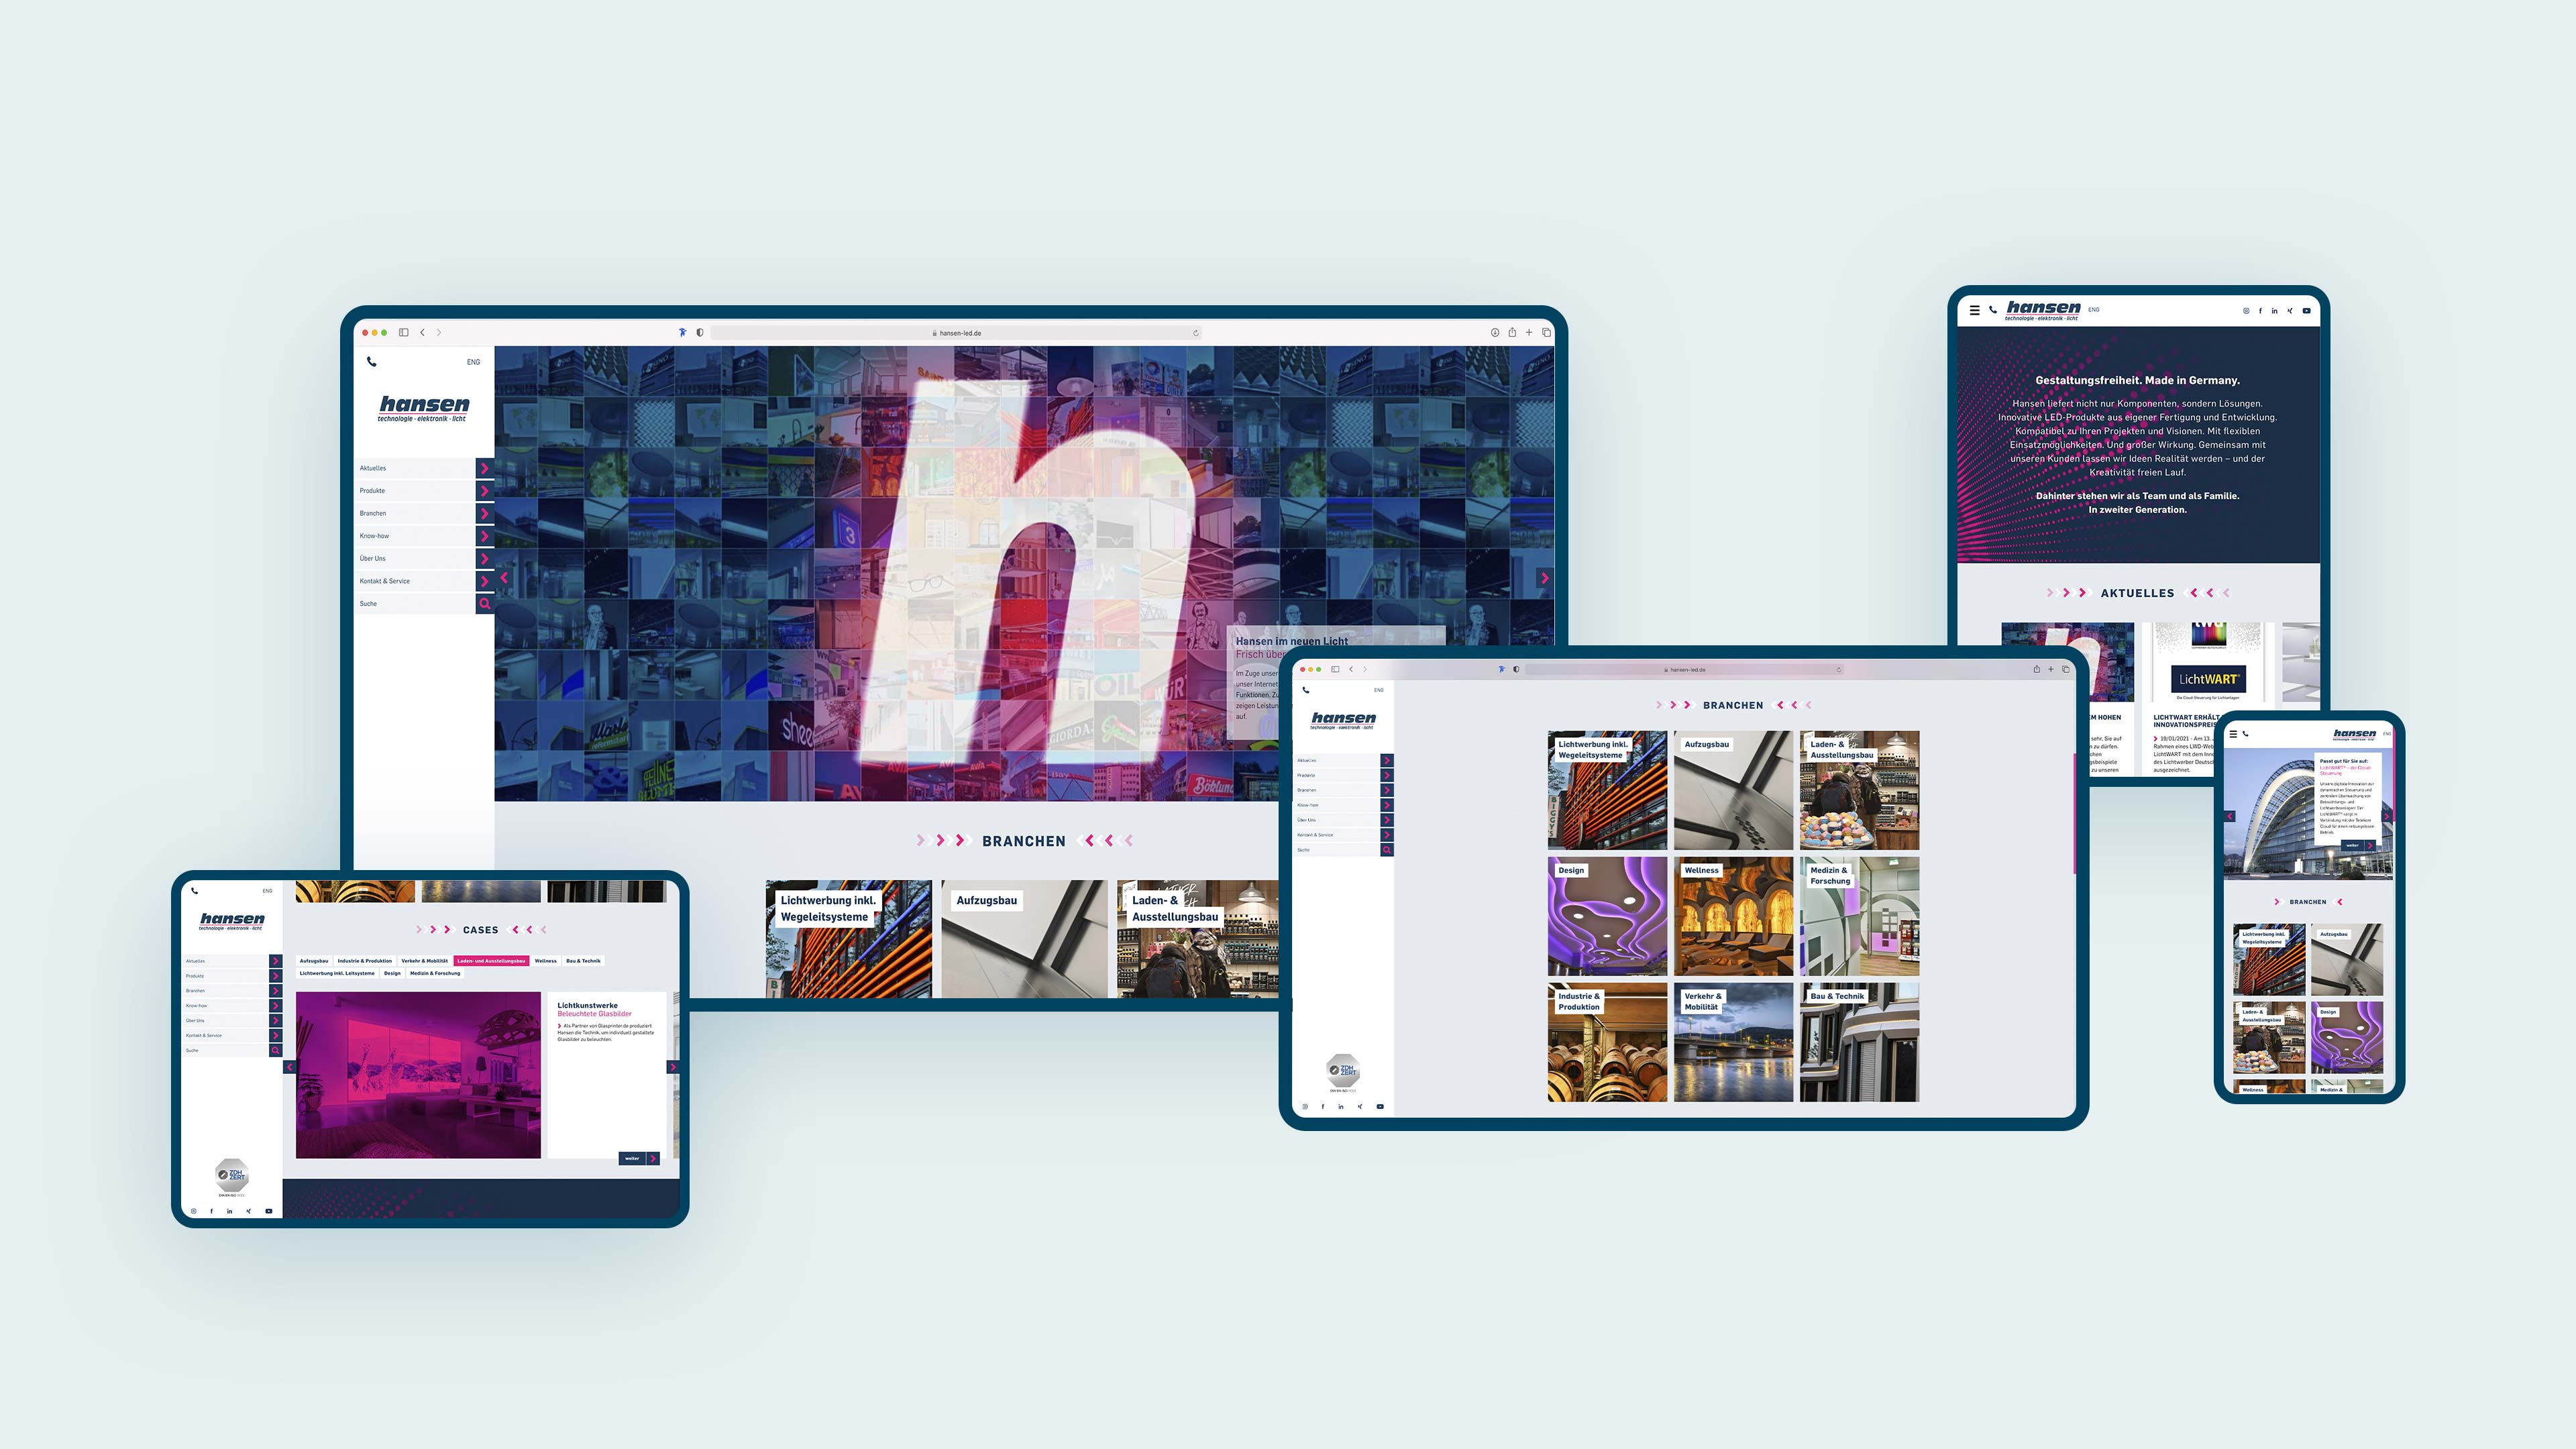 Fünf Hansen LED Homepages in verschiedenen digitalen Ansichten